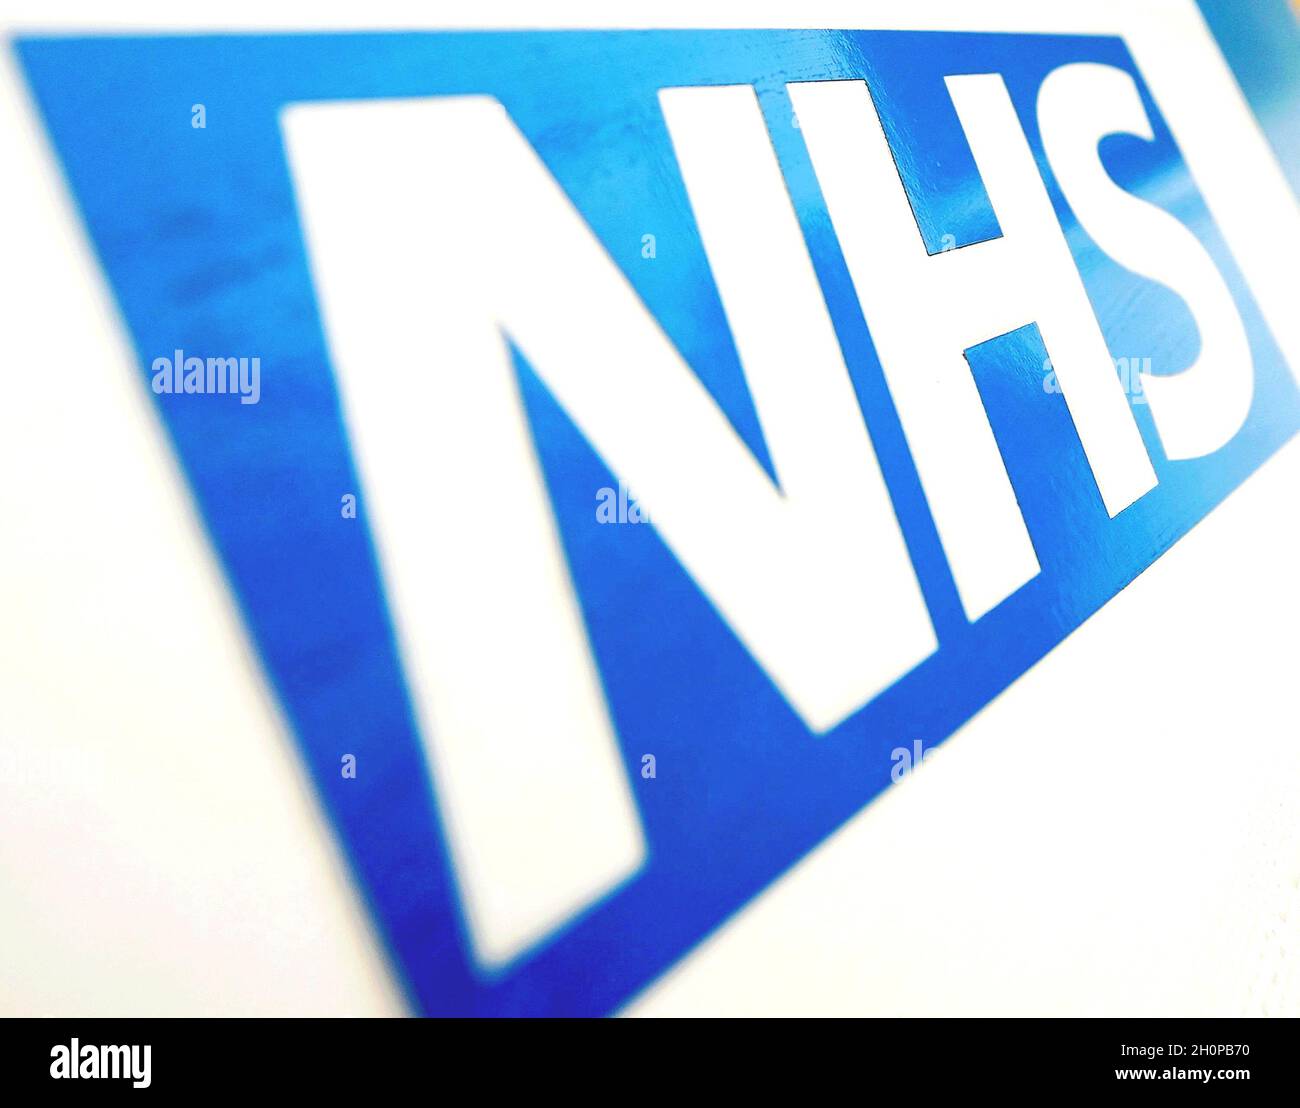 Photo du dossier datée du 06/11/10 du logo NHS.La demande de soins augmente rapidement dans l'ensemble du NHS, malgré des listes d'attente déjà records, car de nouvelles données du NHS jeudi devraient montrer la liste d'attente la plus élevée de toute l'Angleterre. Banque D'Images